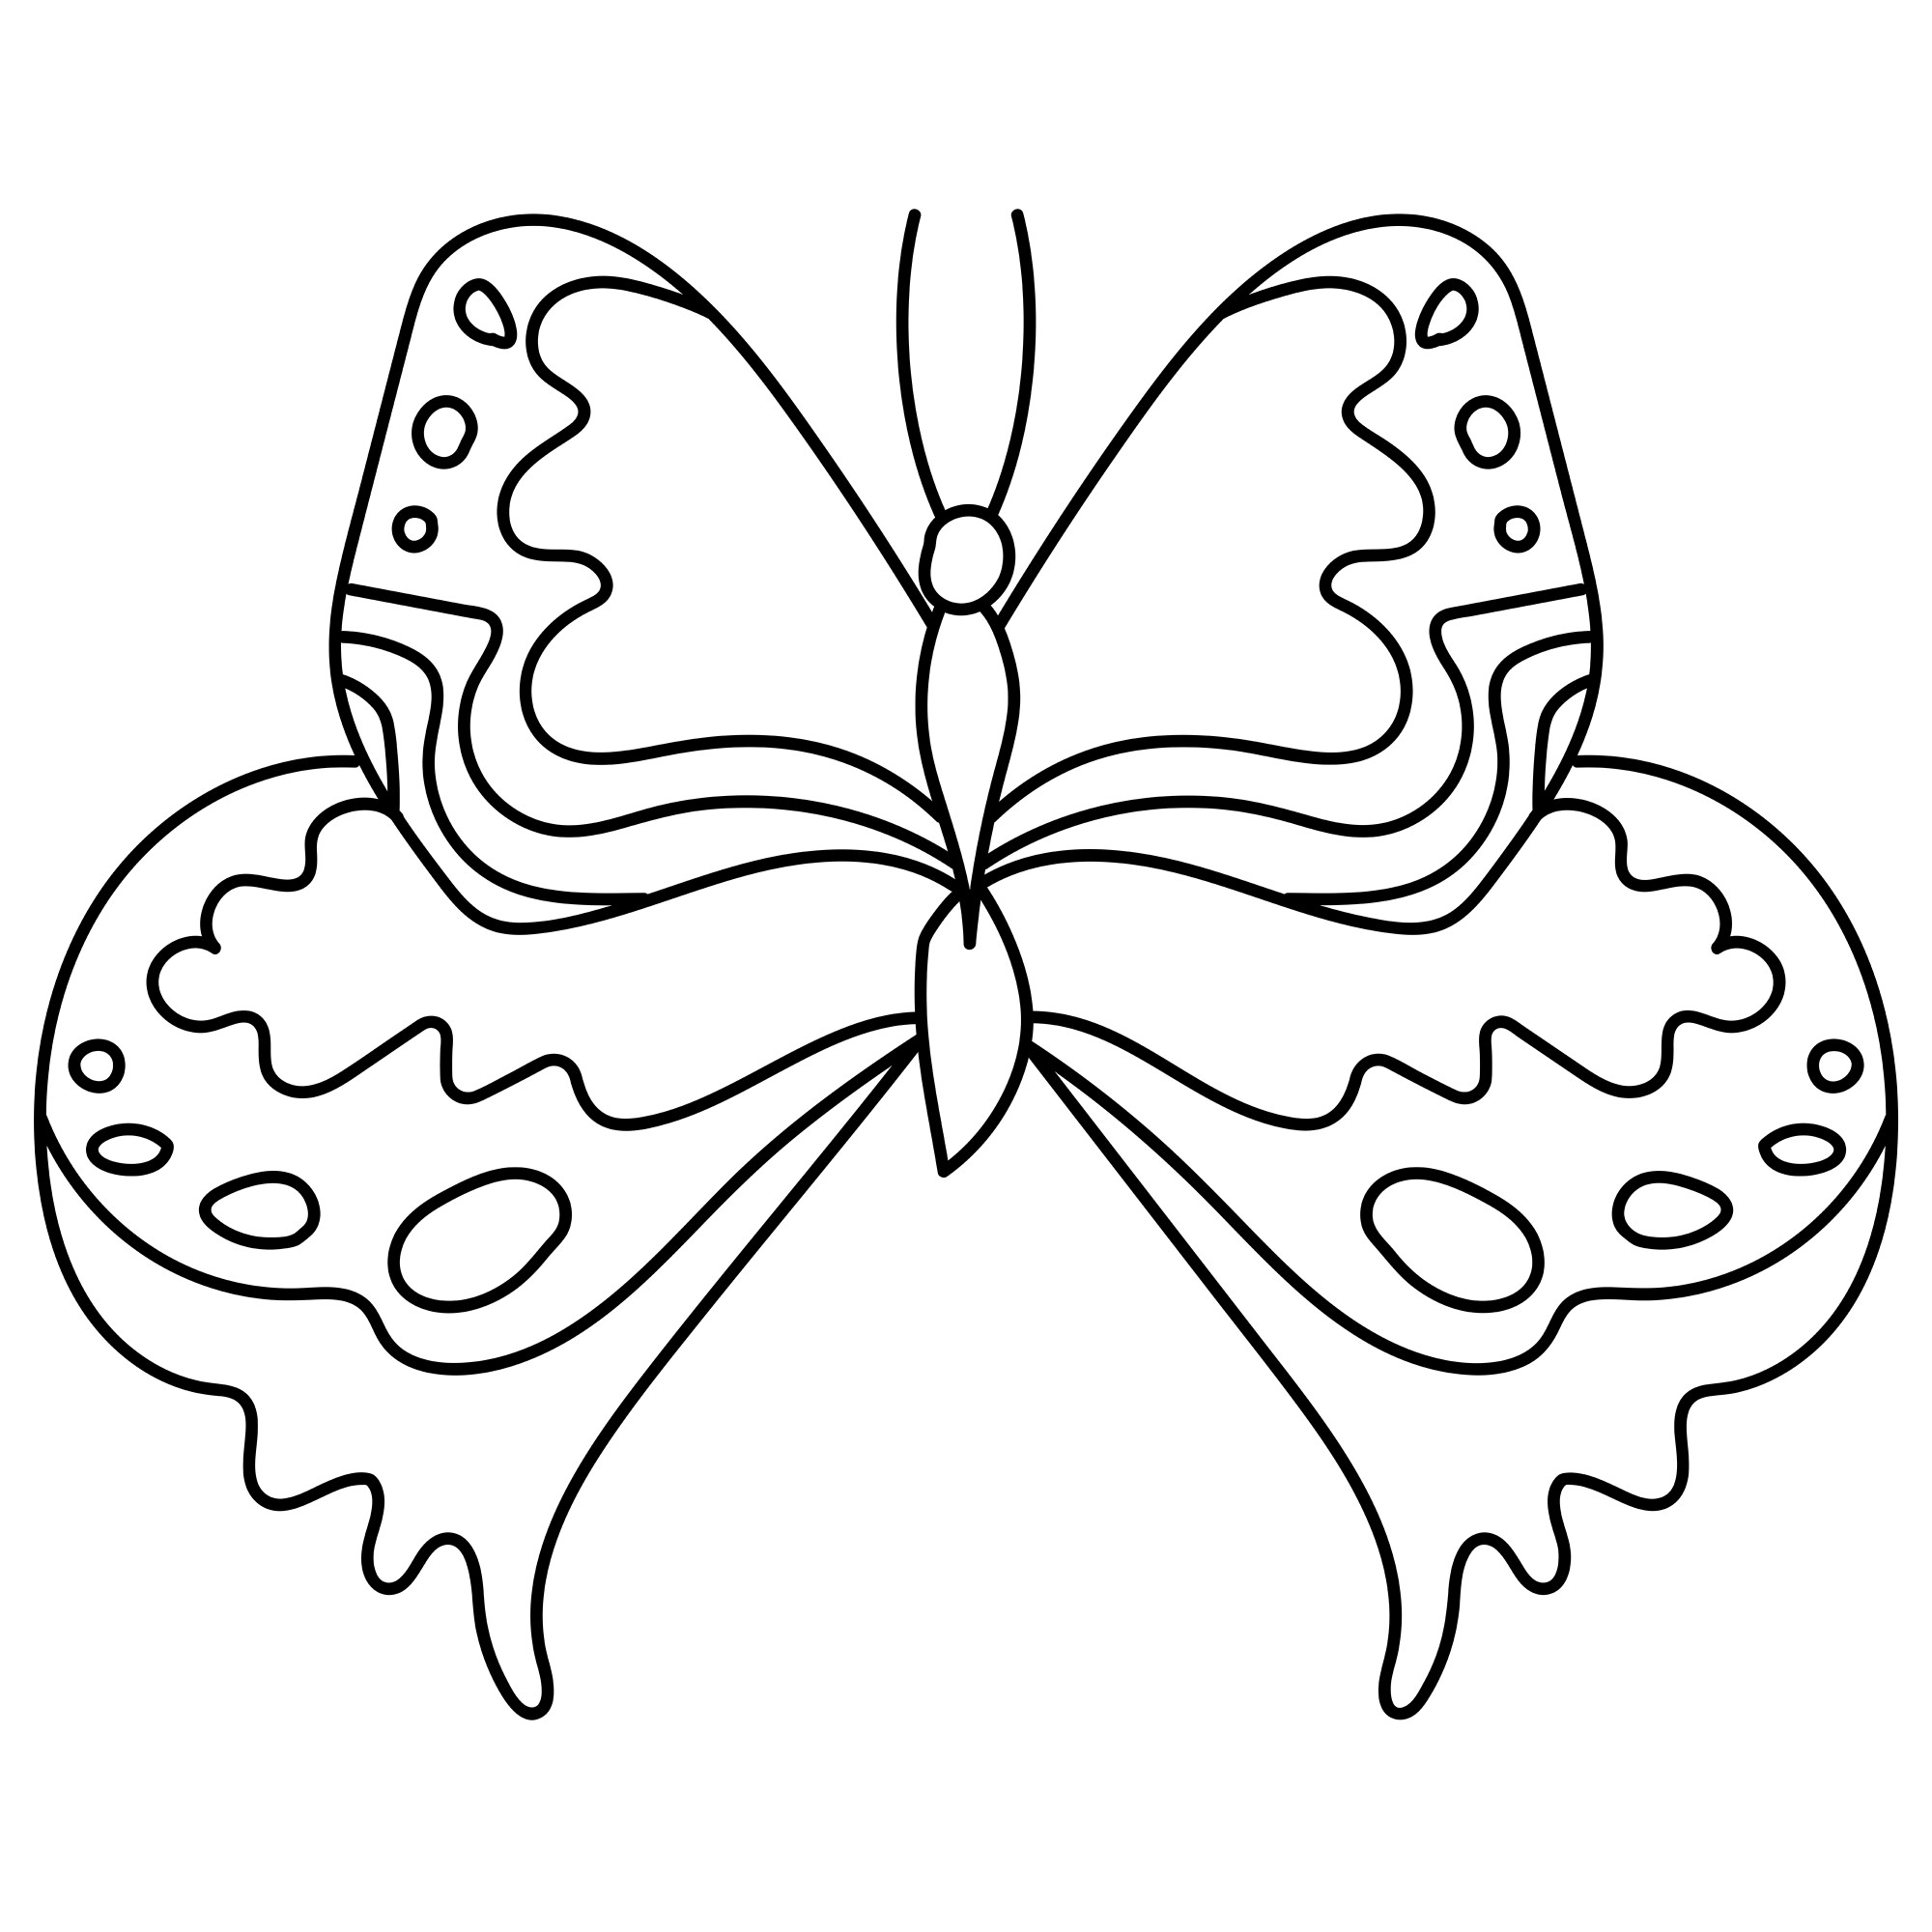 Раскраска для детей: бабочка с великолепными узорами на крыльях